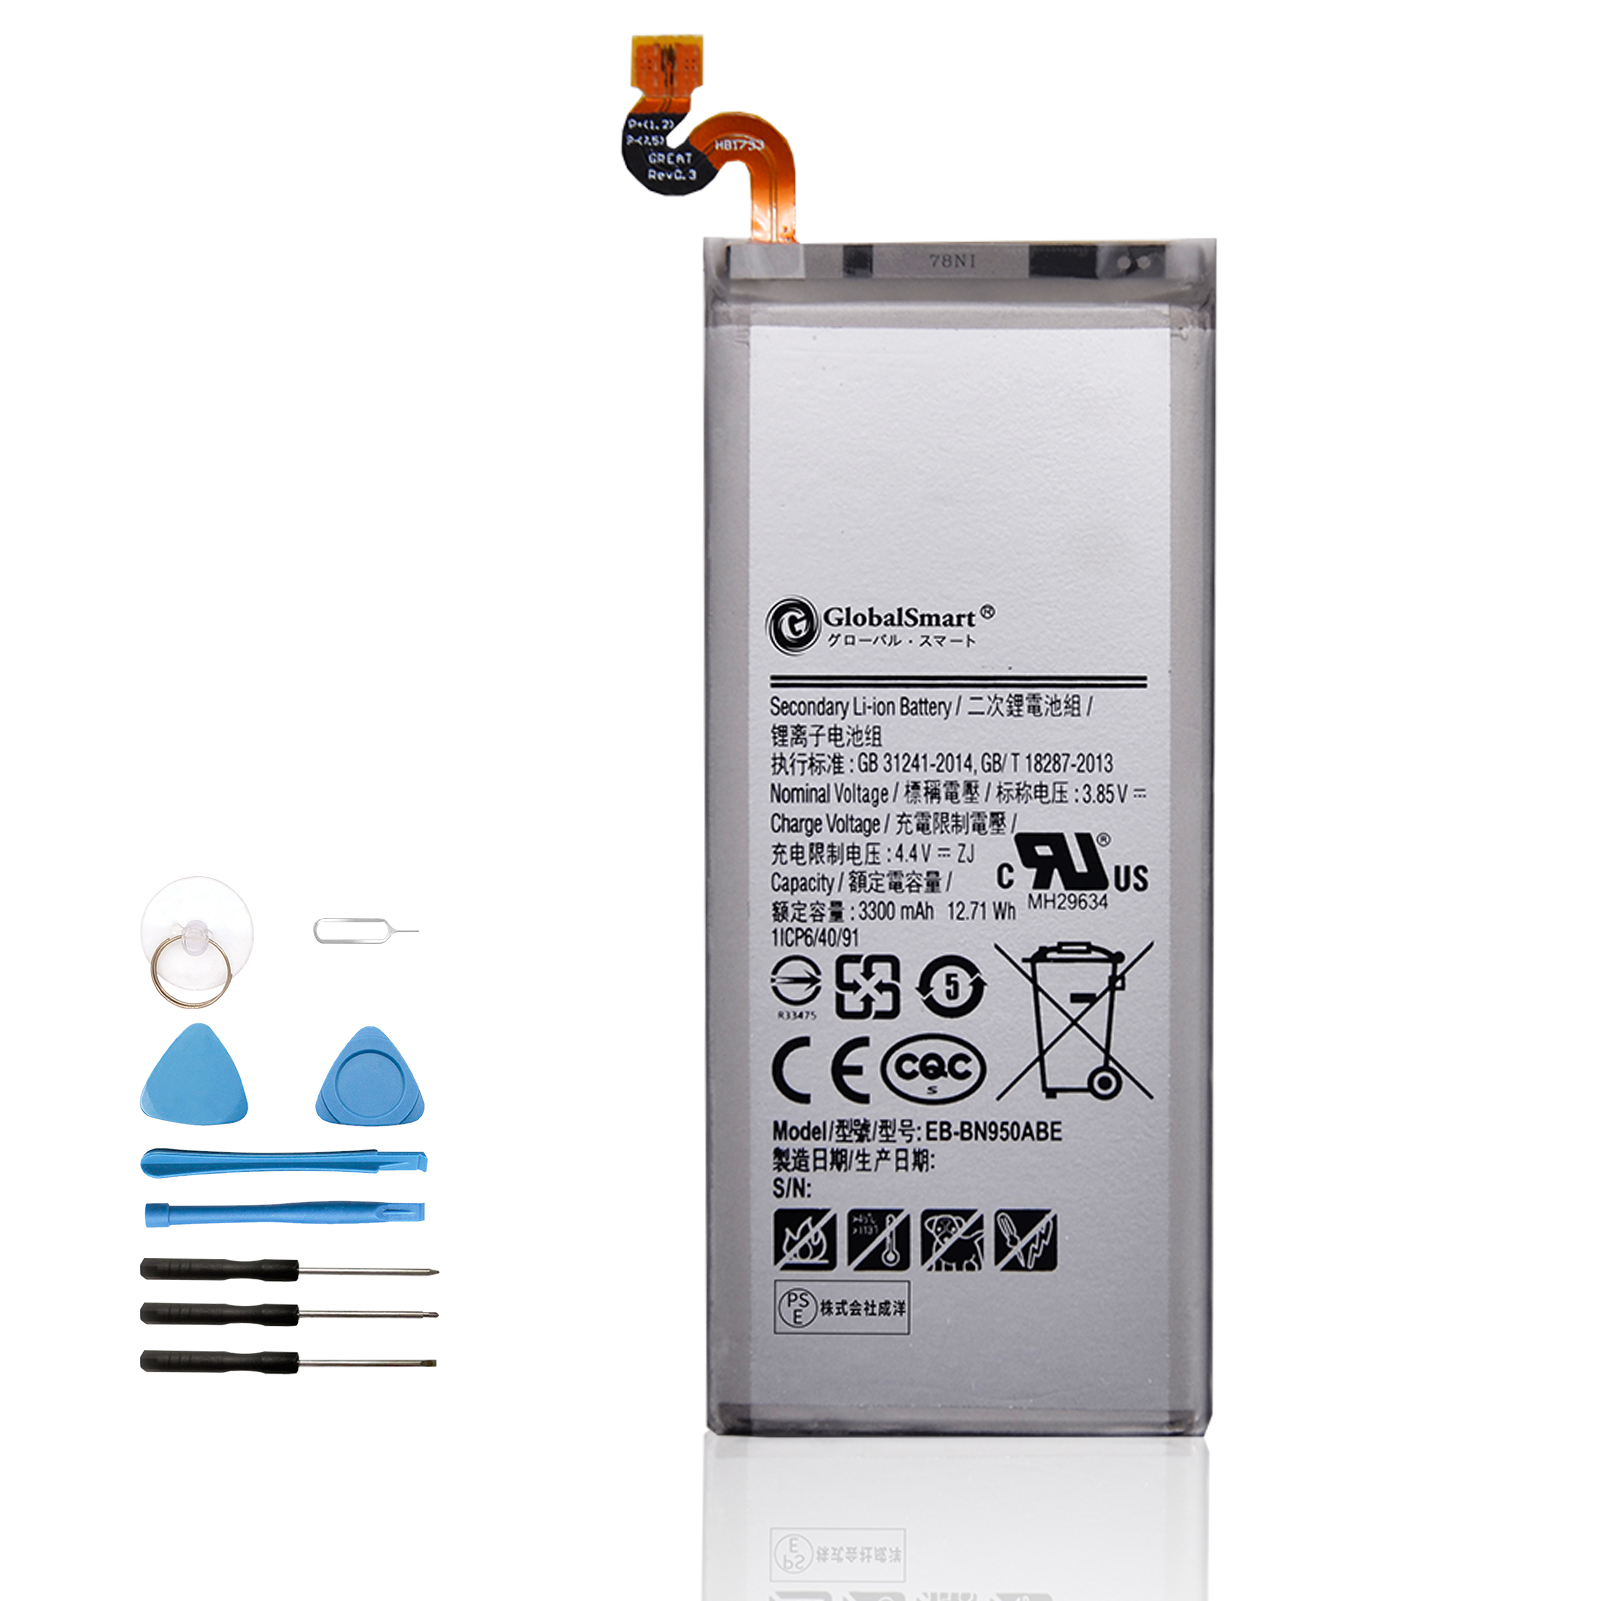 新品 SAMSUNG Galaxy Note  交換電池パック 3300mAh 3.85V PSE認証済 1年保証 交換用キット 大容量バッテリー LG23EQ